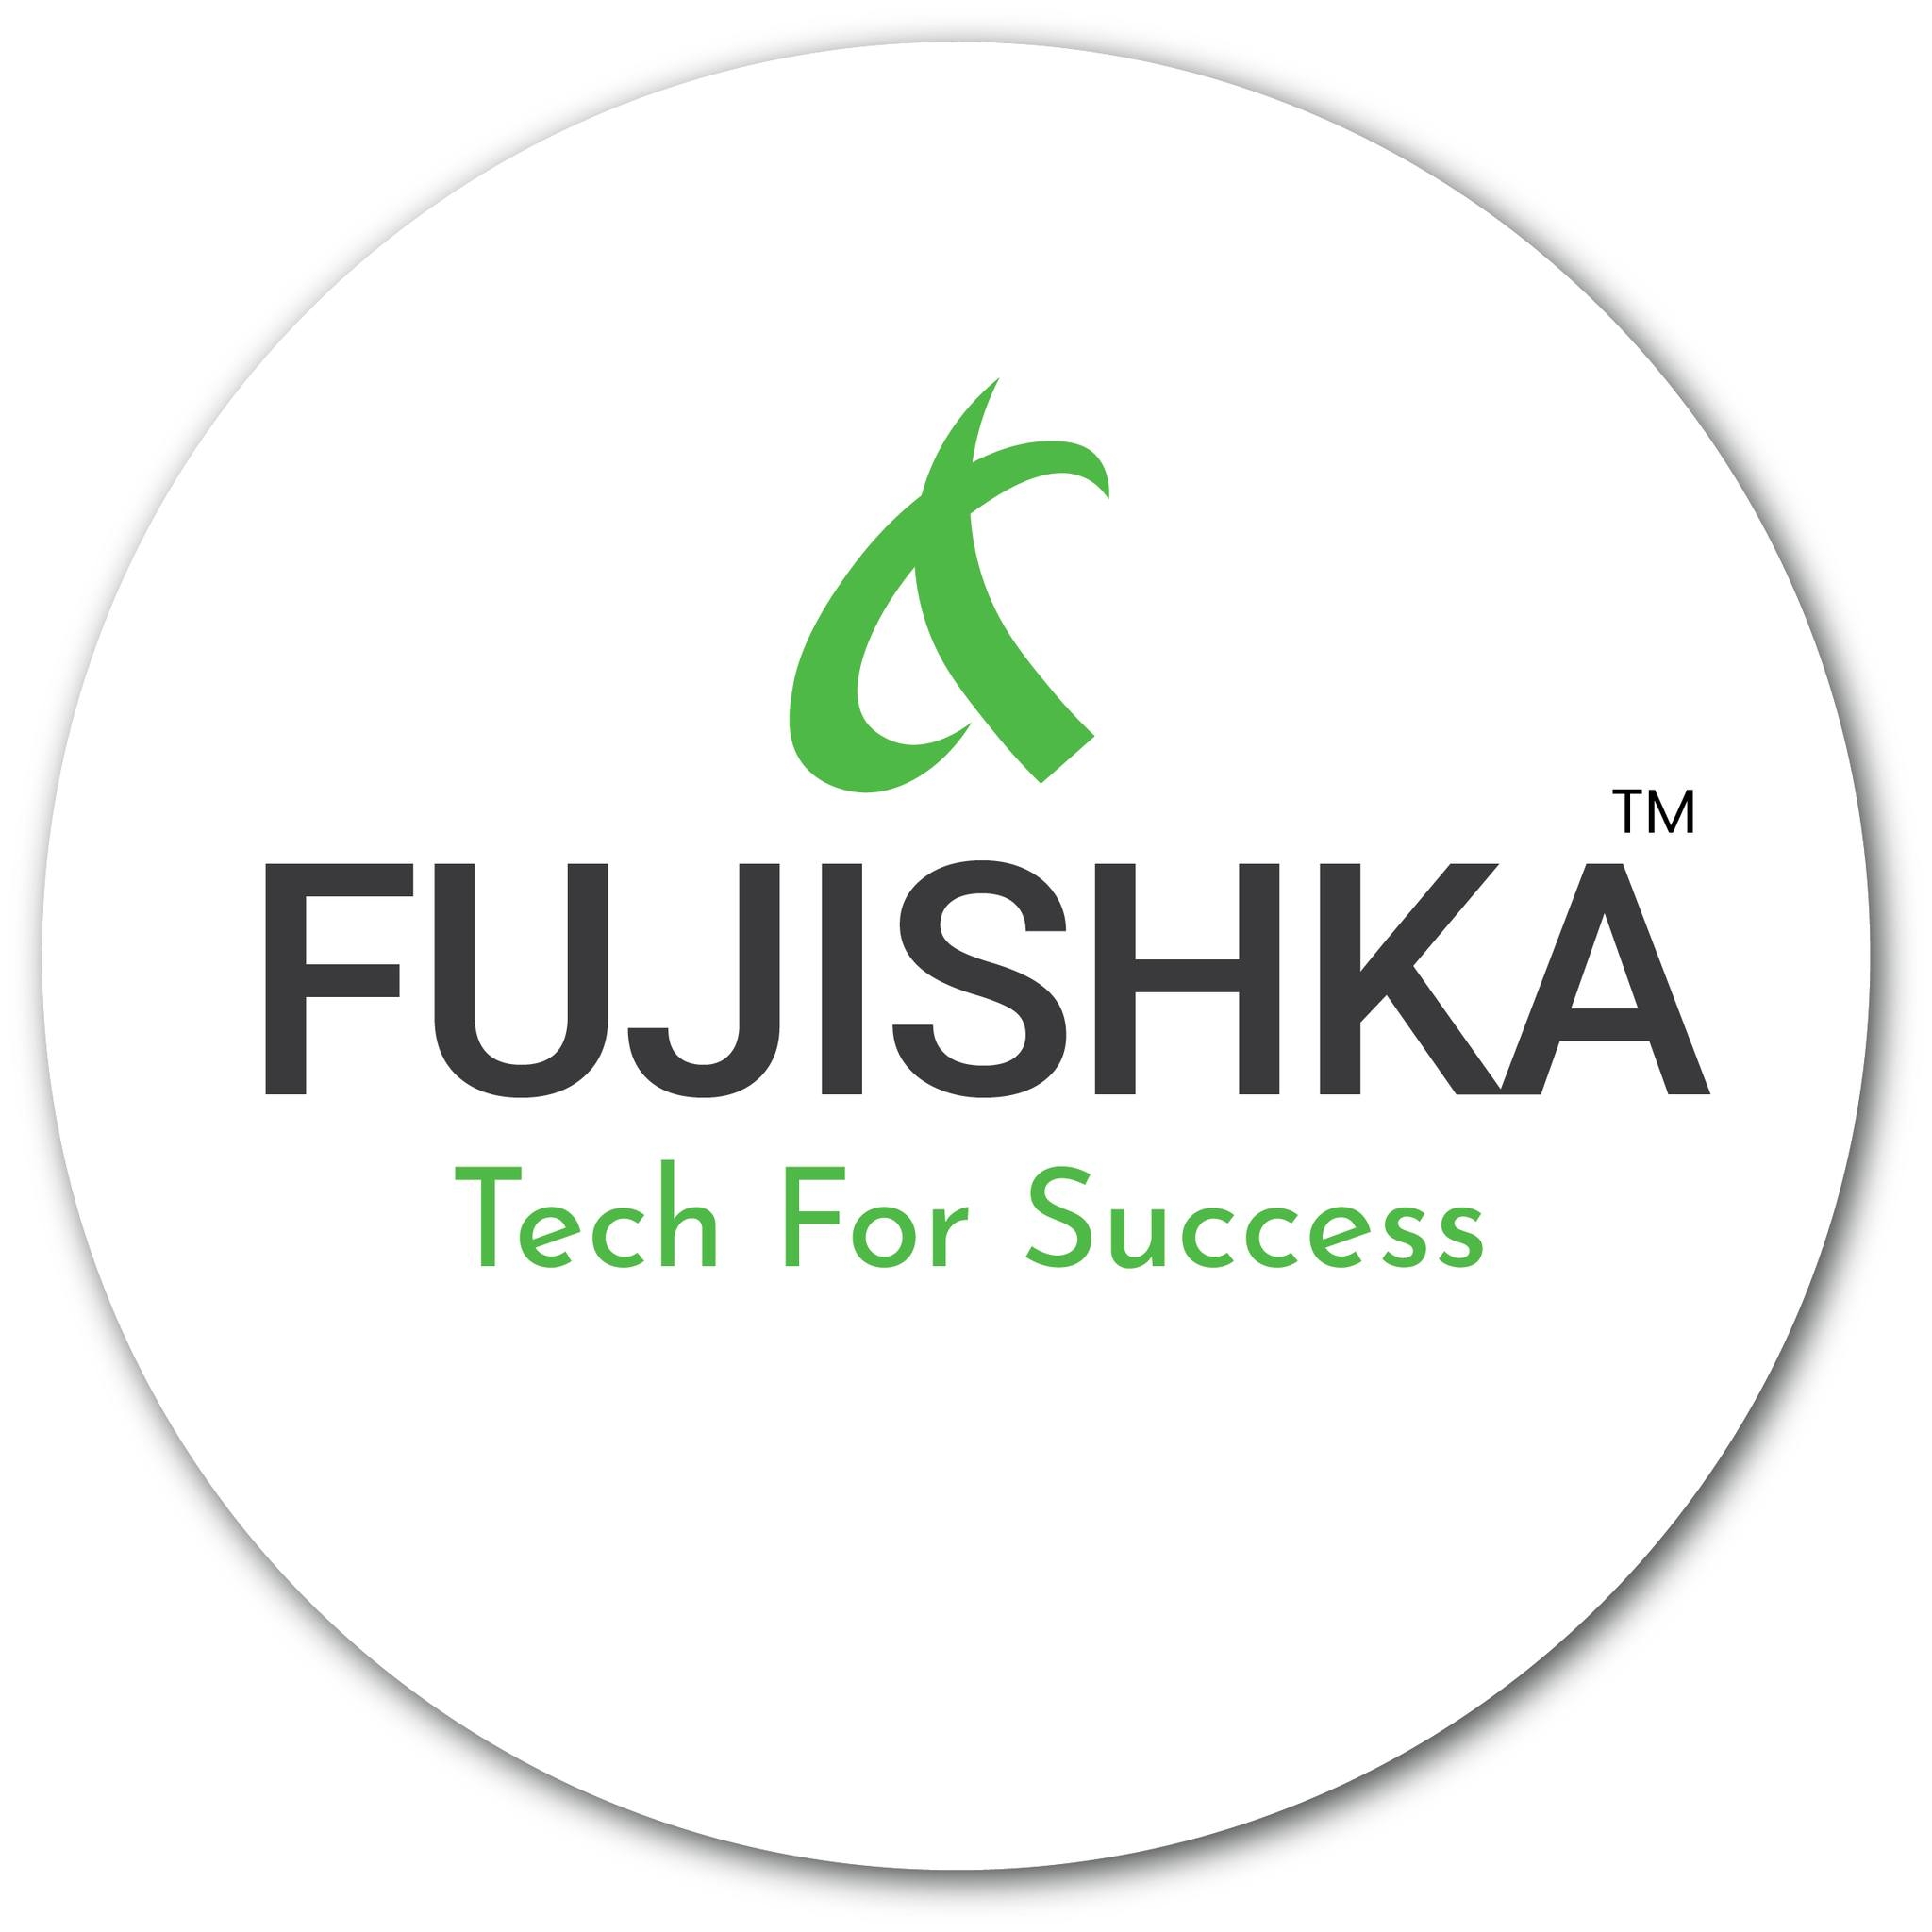 Fujishka